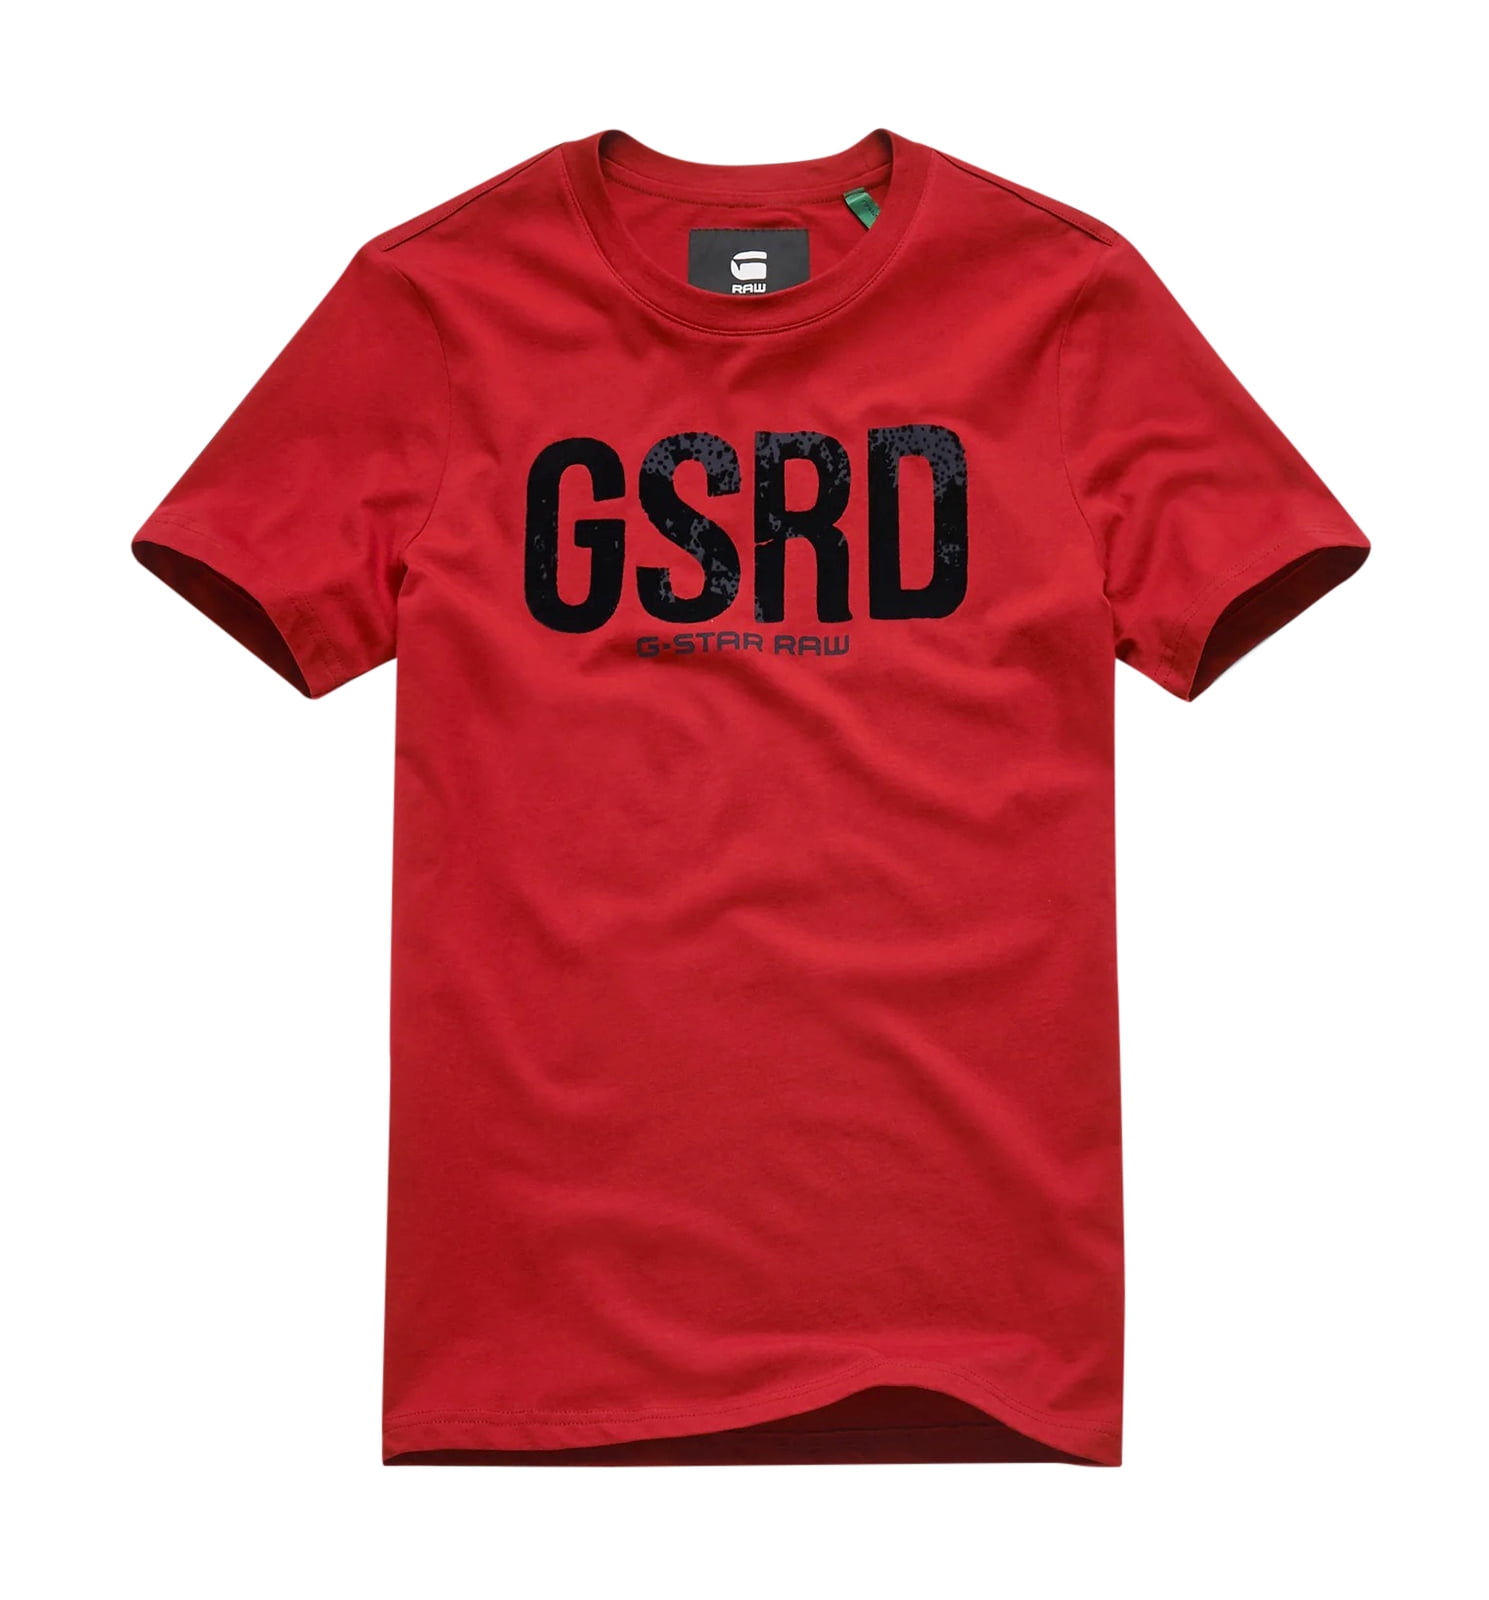 gsrd clothing